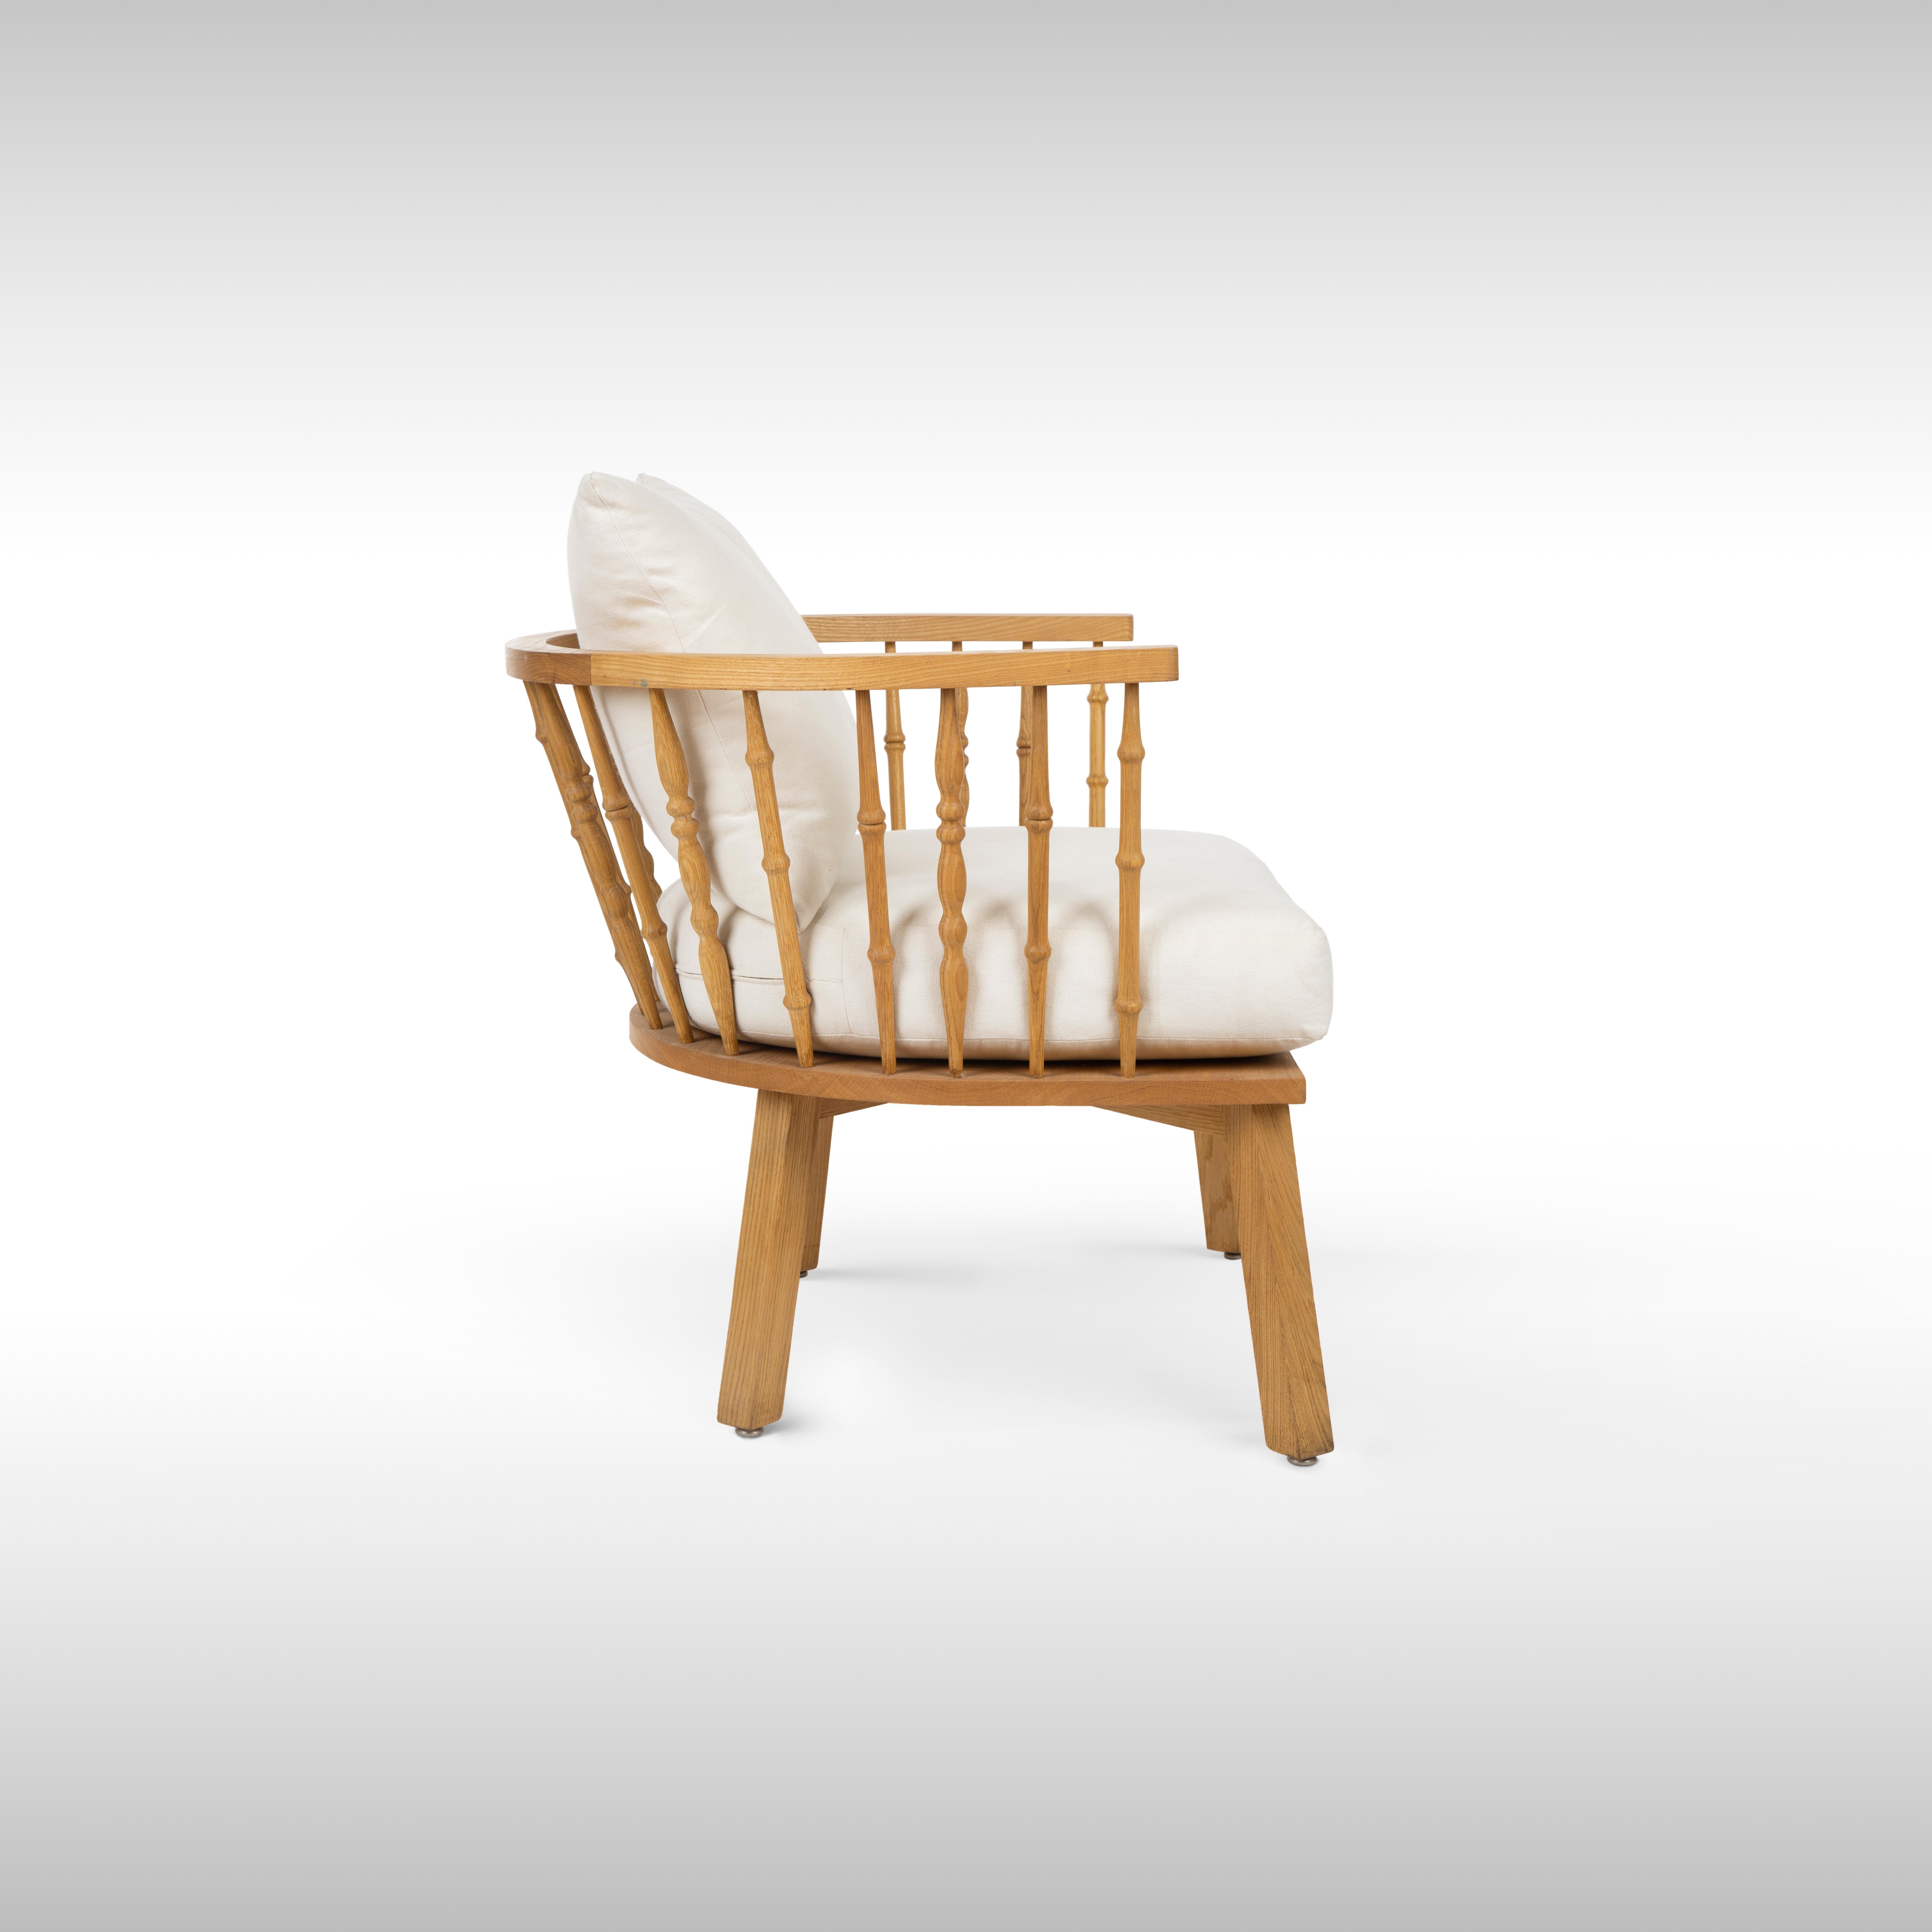 Sessel aus ölbehandeltem Eichenholz für den Außenbereich mit geschnitzter Rückenlehne im Arabesken-Stil.
Holen Sie sich mit unserem Patio Armchair die bequeme Entspannung nach drinnen. Unser Outdoor-Sessel ist aus behandeltem Eichenholz für den